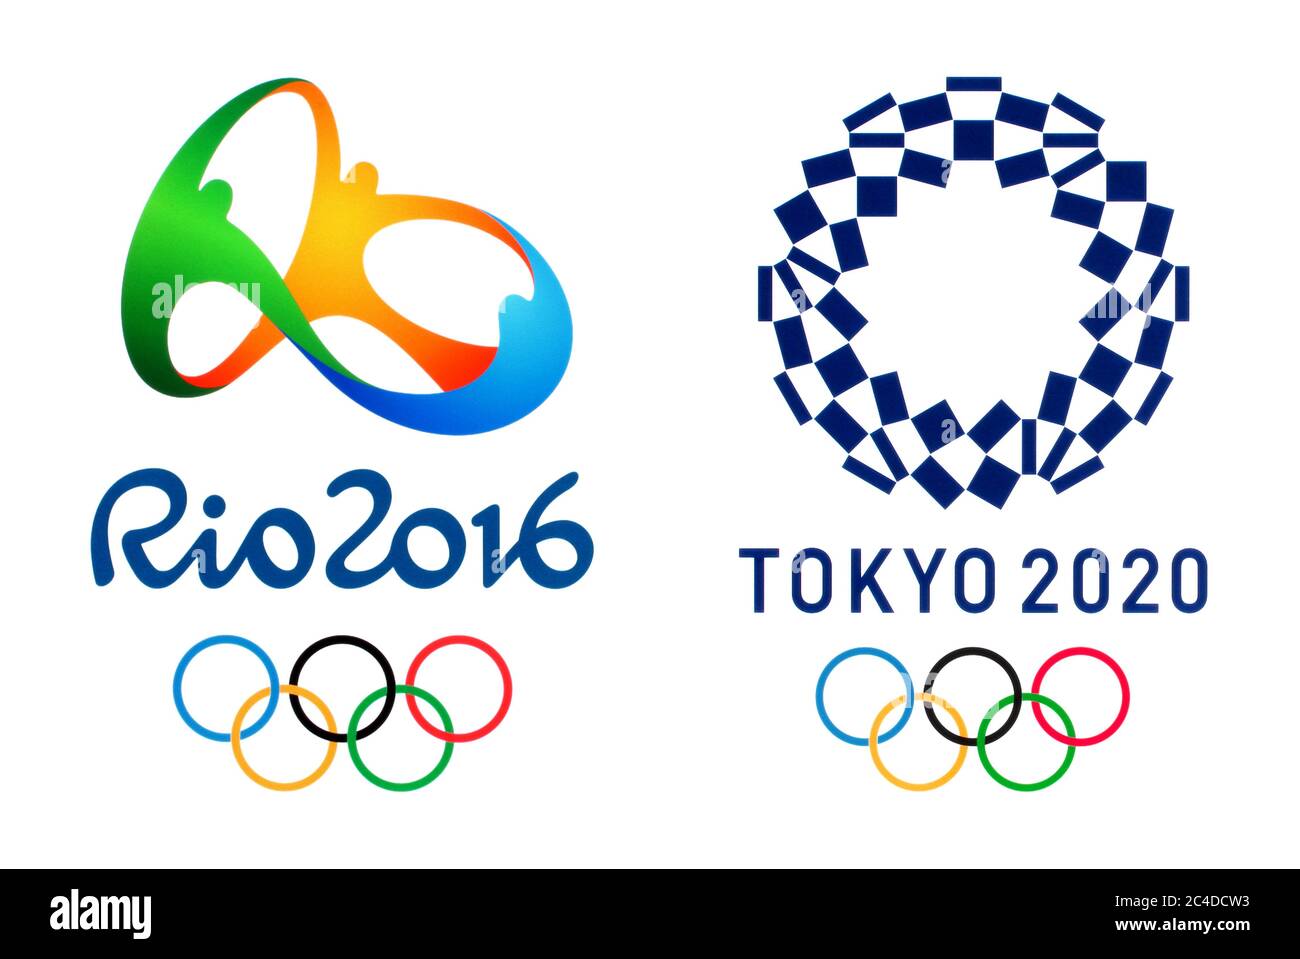 Kiev, Ucraina - 04 ottobre 2019: Loghi ufficiali dei Giochi Olimpici estivi 2020 a Tokyo, Giappone e Olimpiadi 2016 a Rio, Brasile, stampati su pa Foto Stock